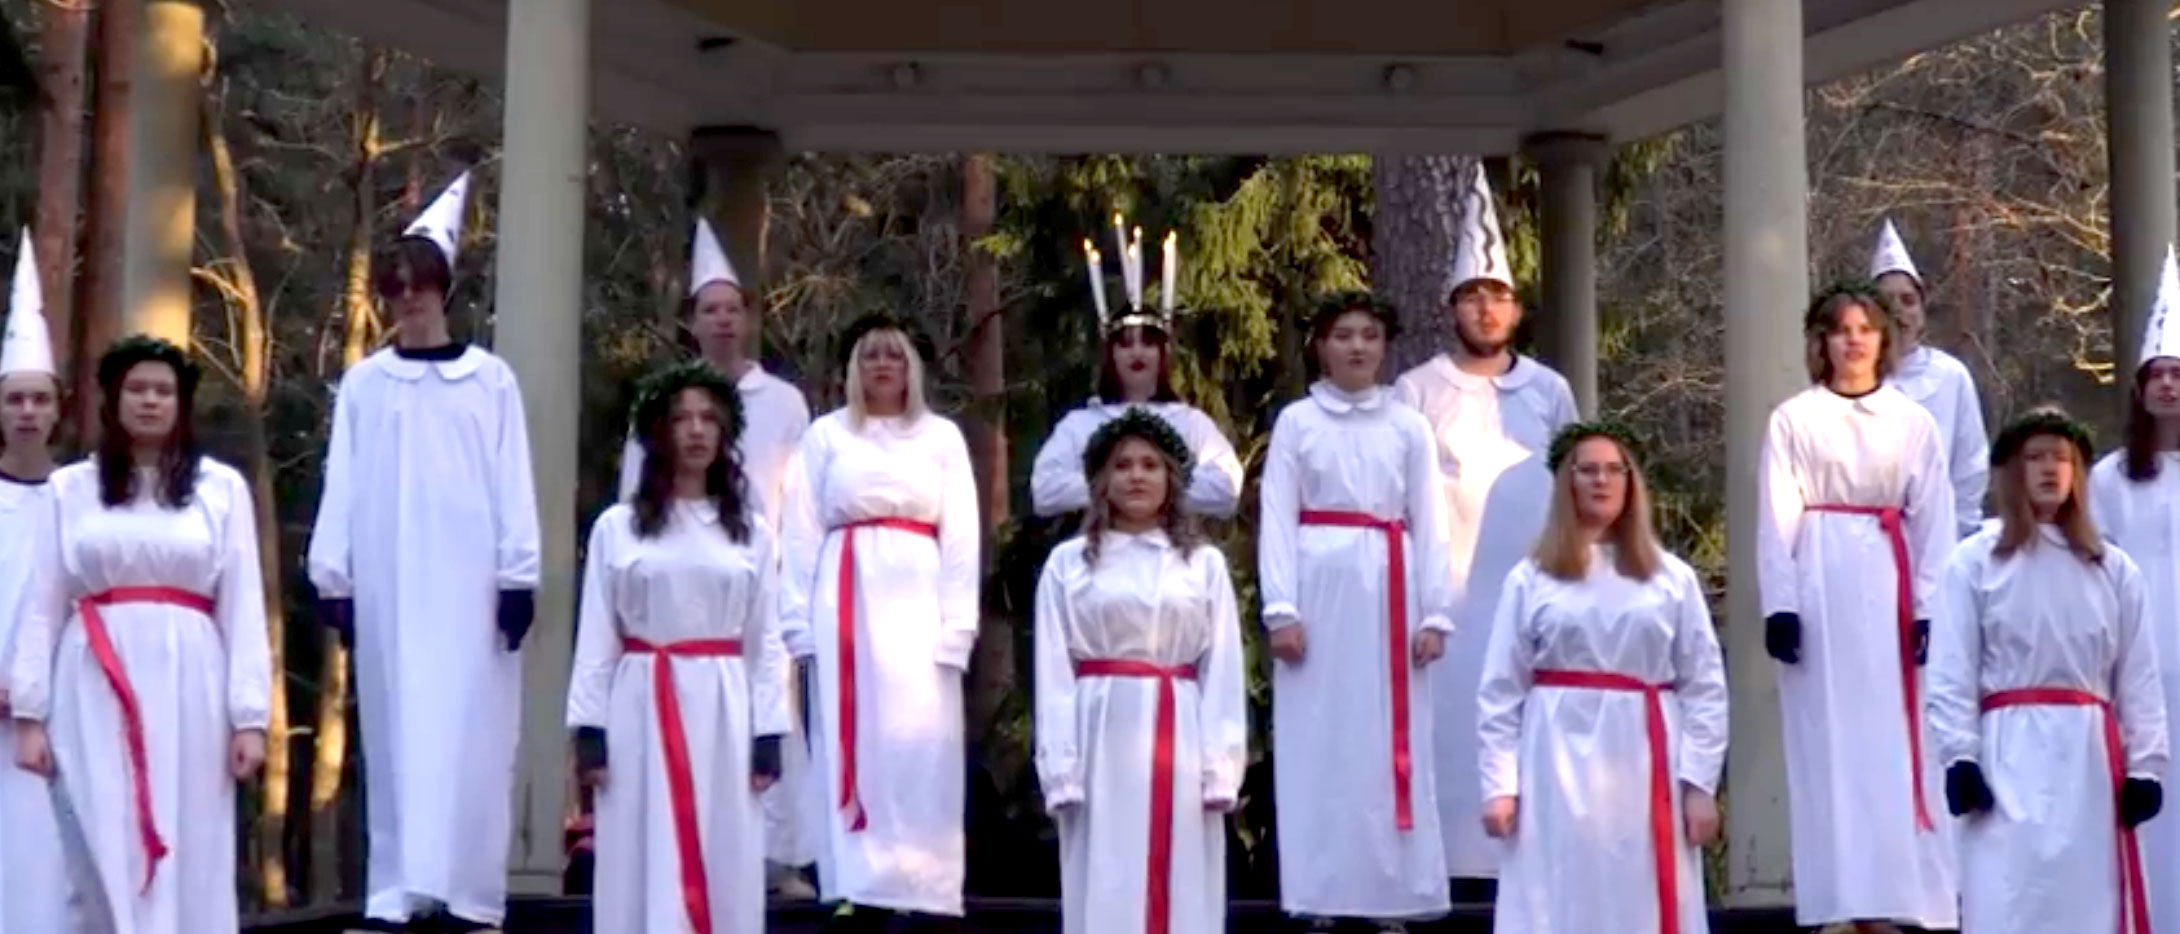 Lucia med tärnor står i vitklädda dräkter och sjunger